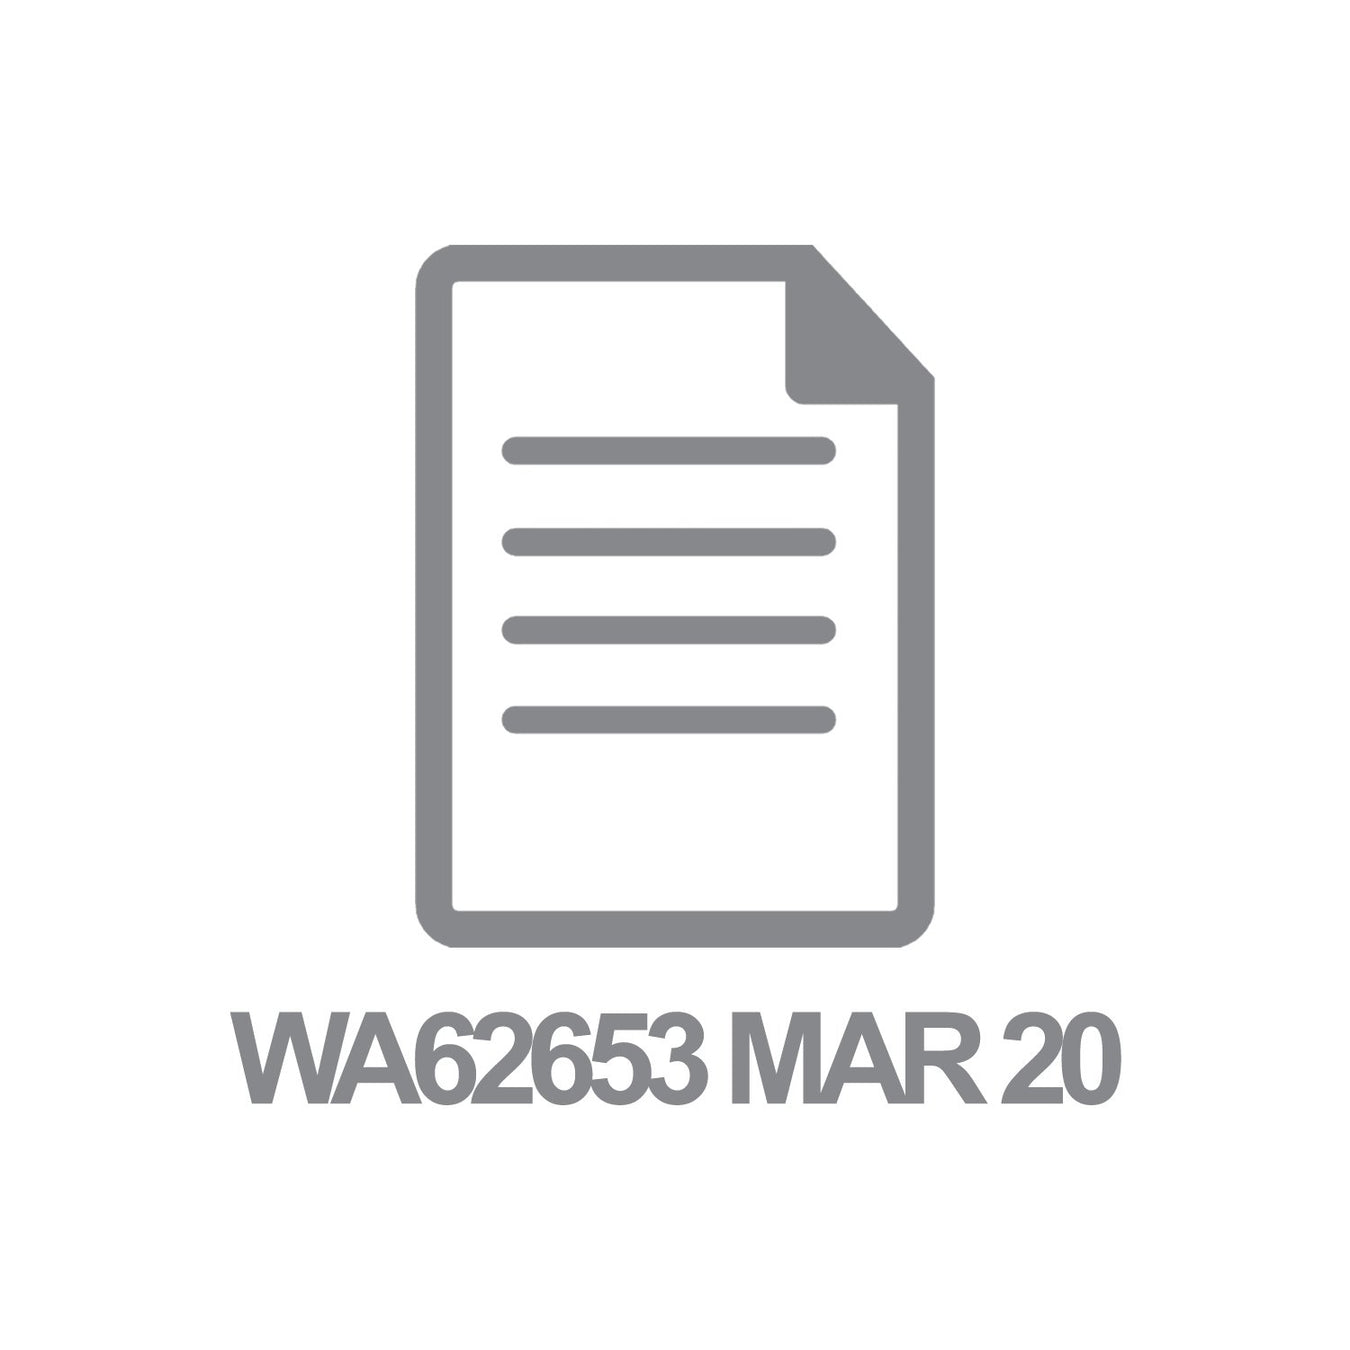 WA62653 MAR 20